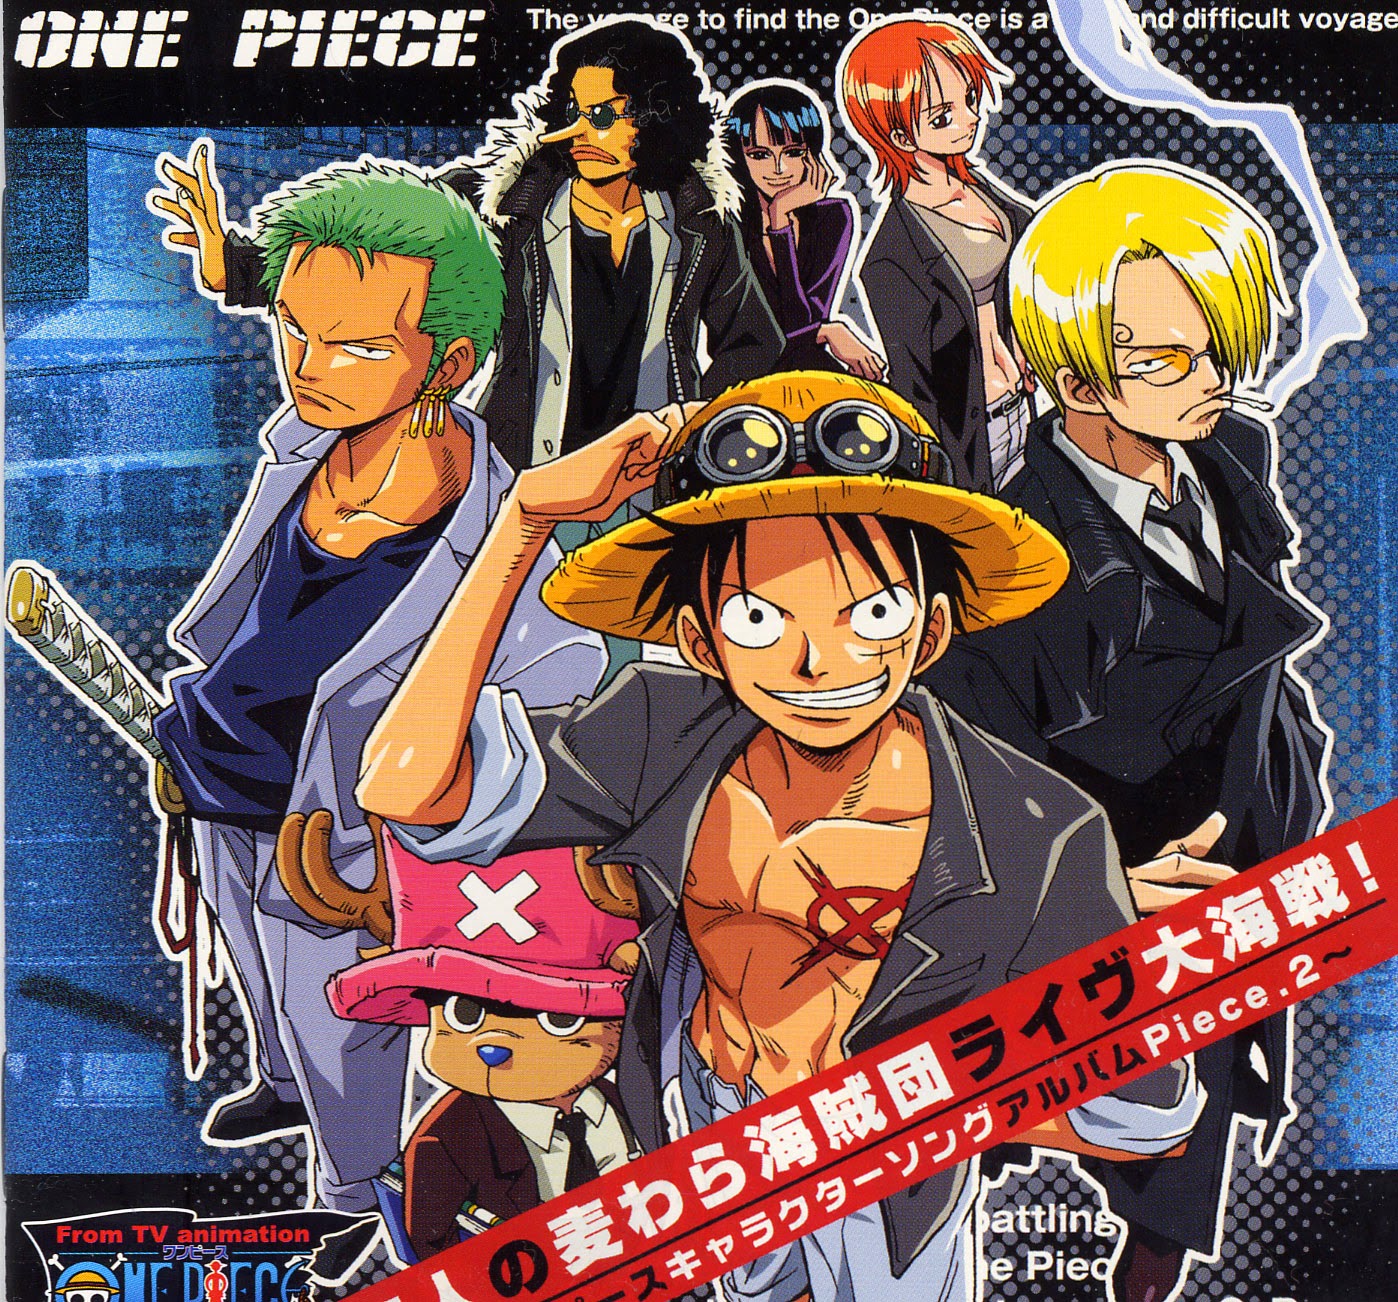 ون بيس One Piece الحلقة 665 مترجم streamma arabic series shows